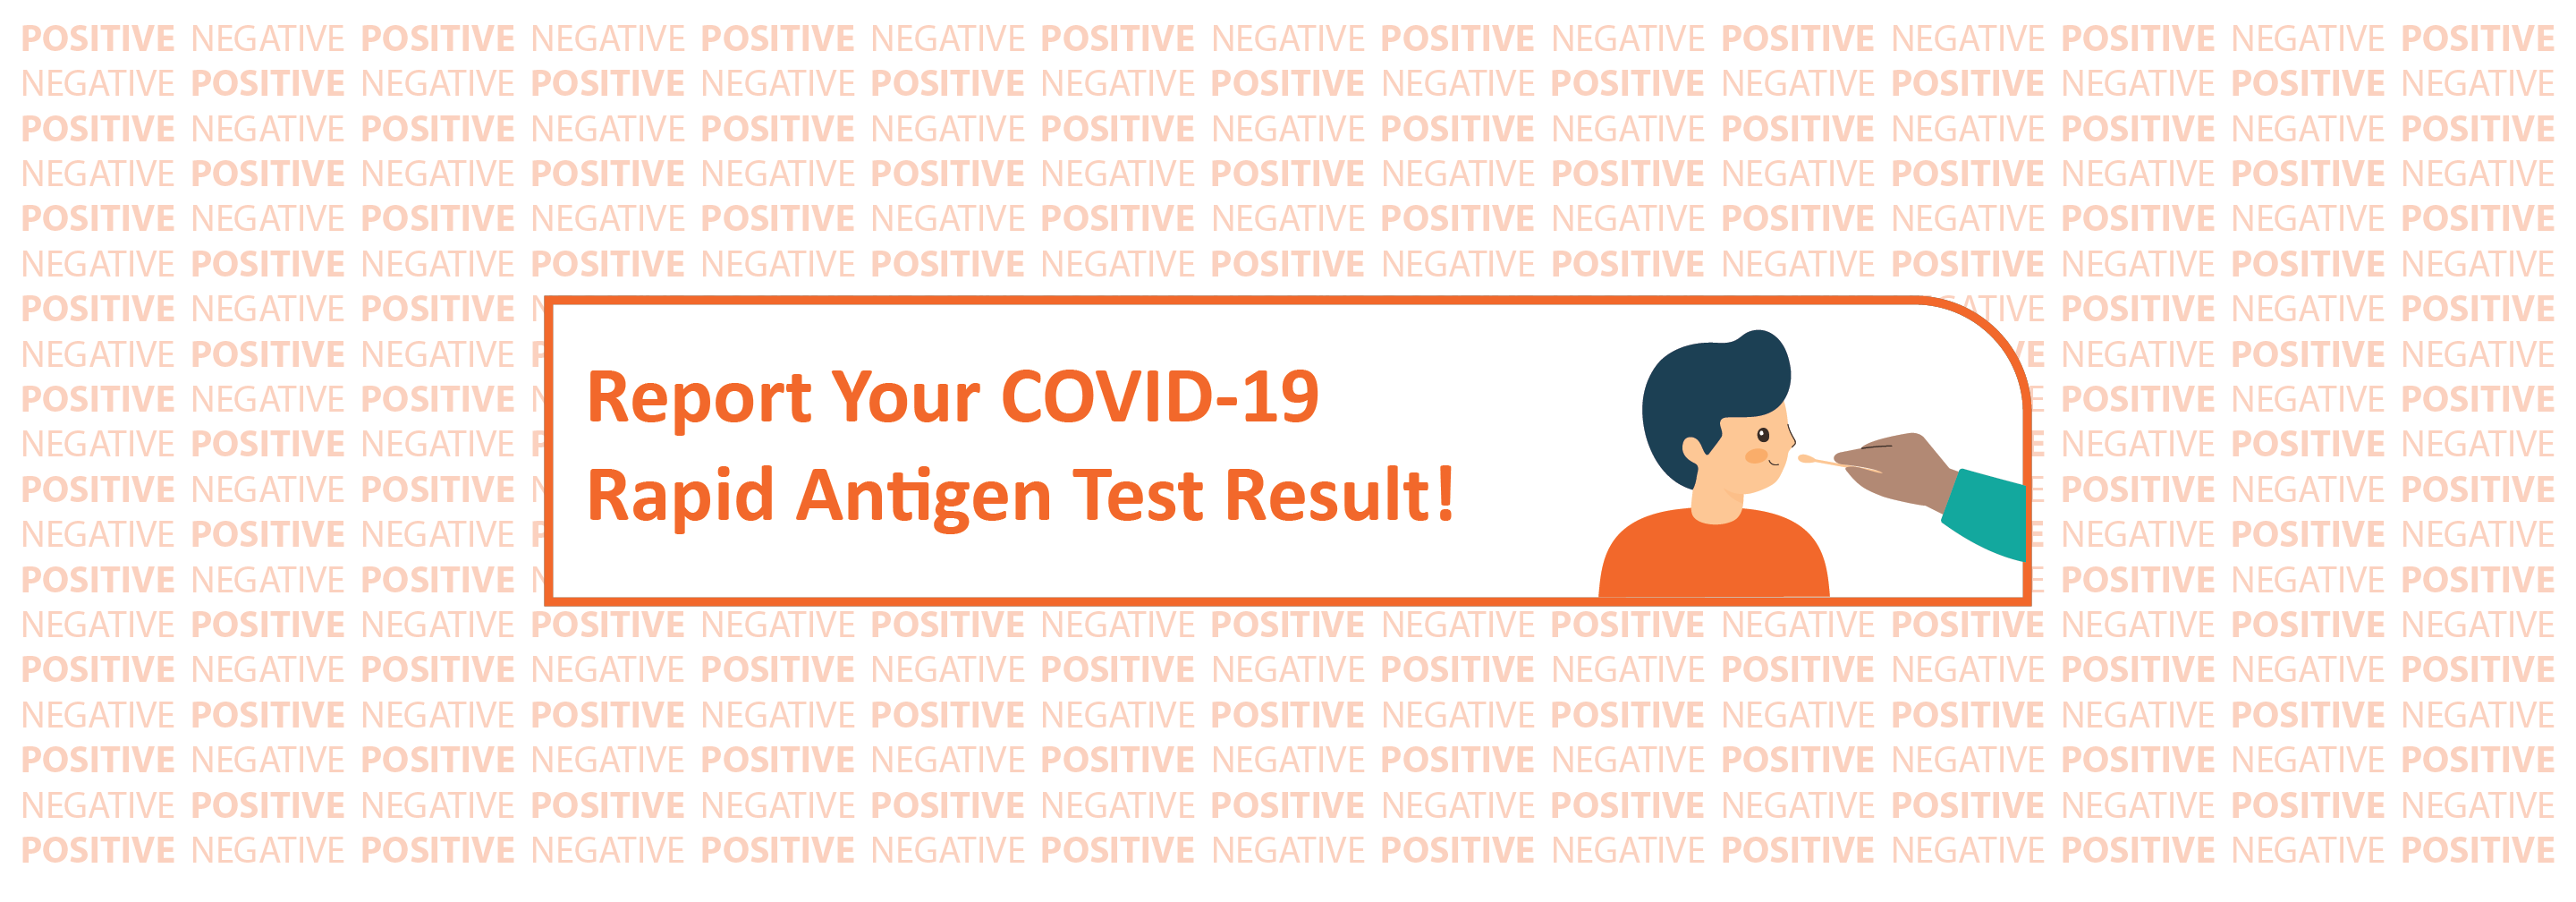 Report your Rapid Antigen Test